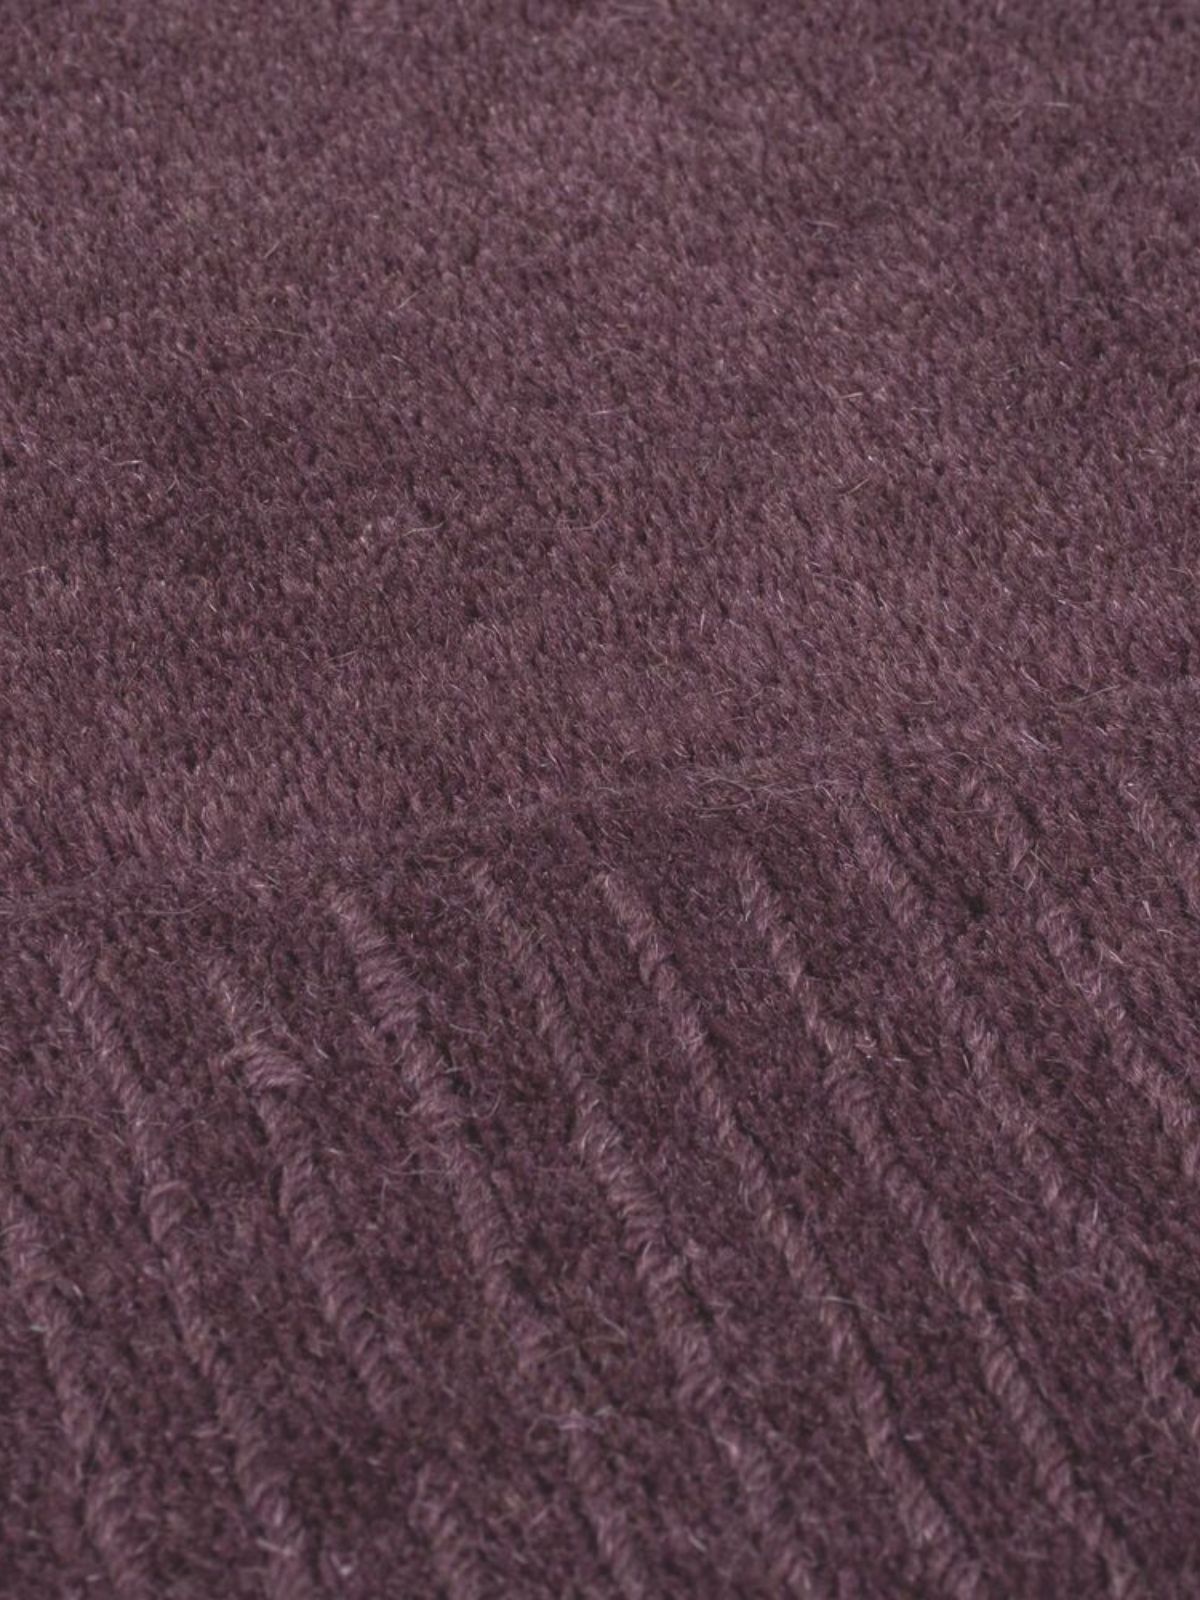 Tappeto di design Textured Wool Border in lana, colore viola-4